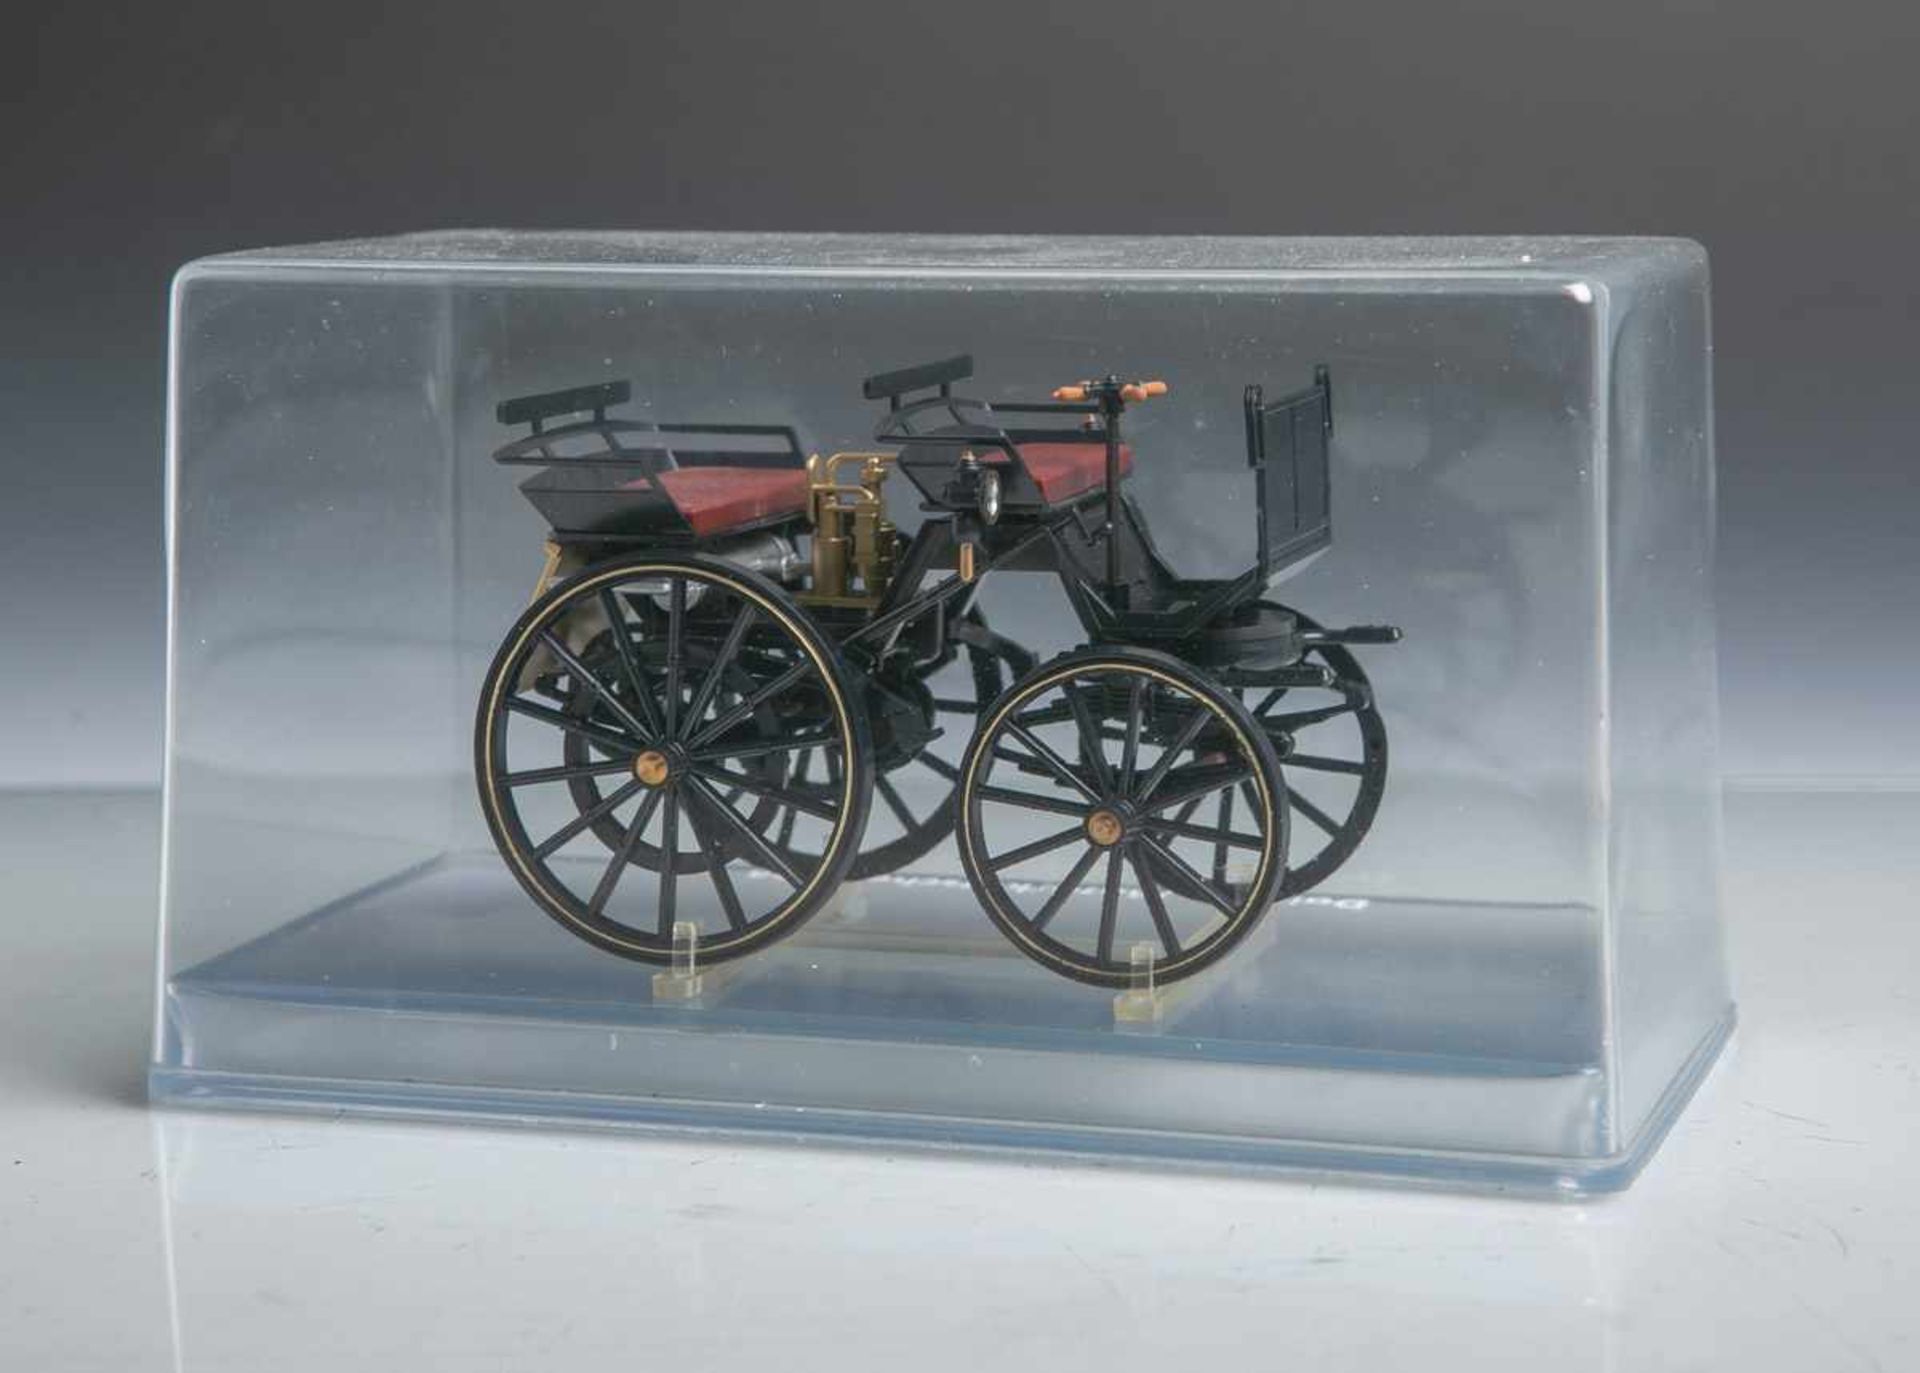 Modell von Daimler-Motorkutsche von 1886 (neuzeitlich, 1986), anlässlich des 100-jährigenJubiläums